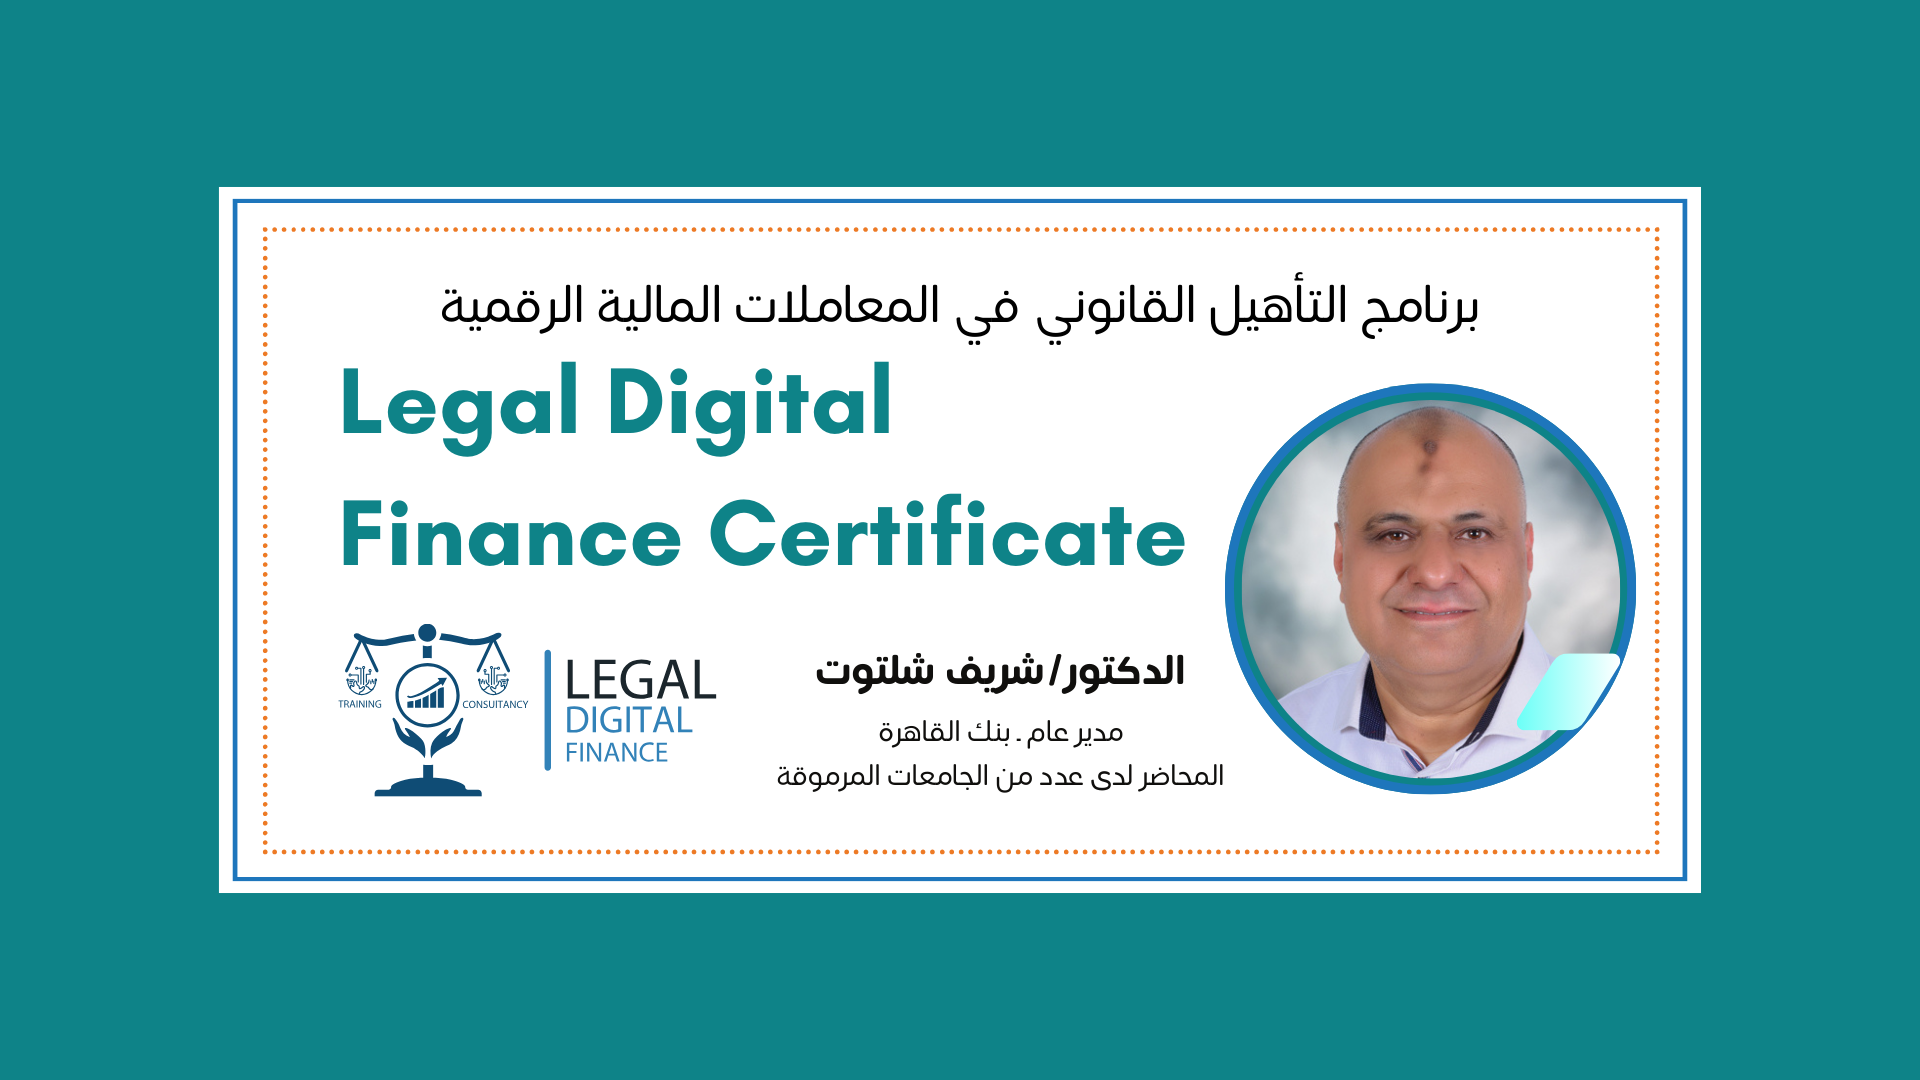 Legal Digital Finance Certificate 